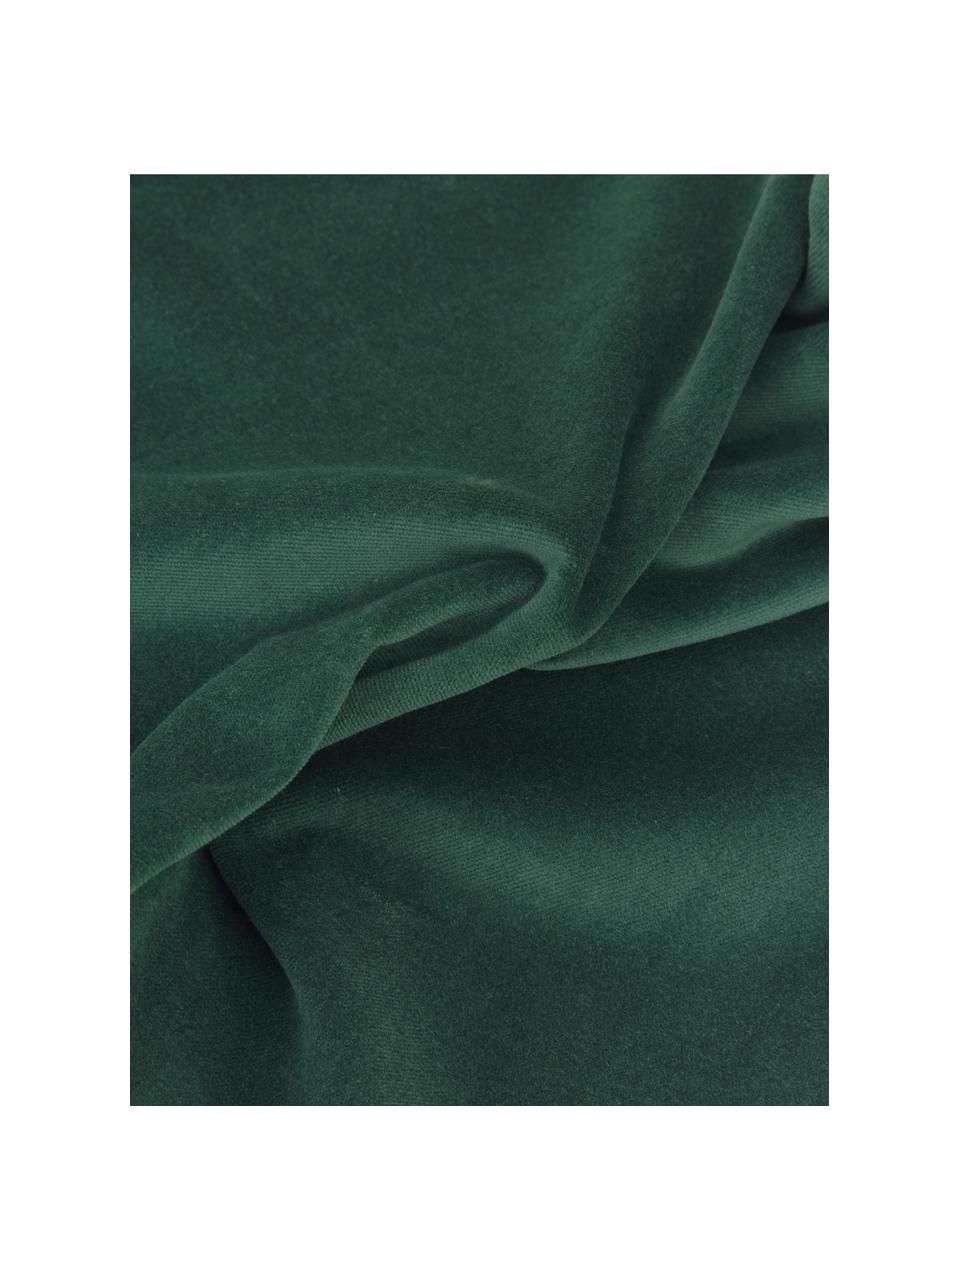 Federa arredo in velluto verde smeraldo Dana, 100% velluto di cotone, Verde smeraldo, Larg. 30 x Lung. 50 cm